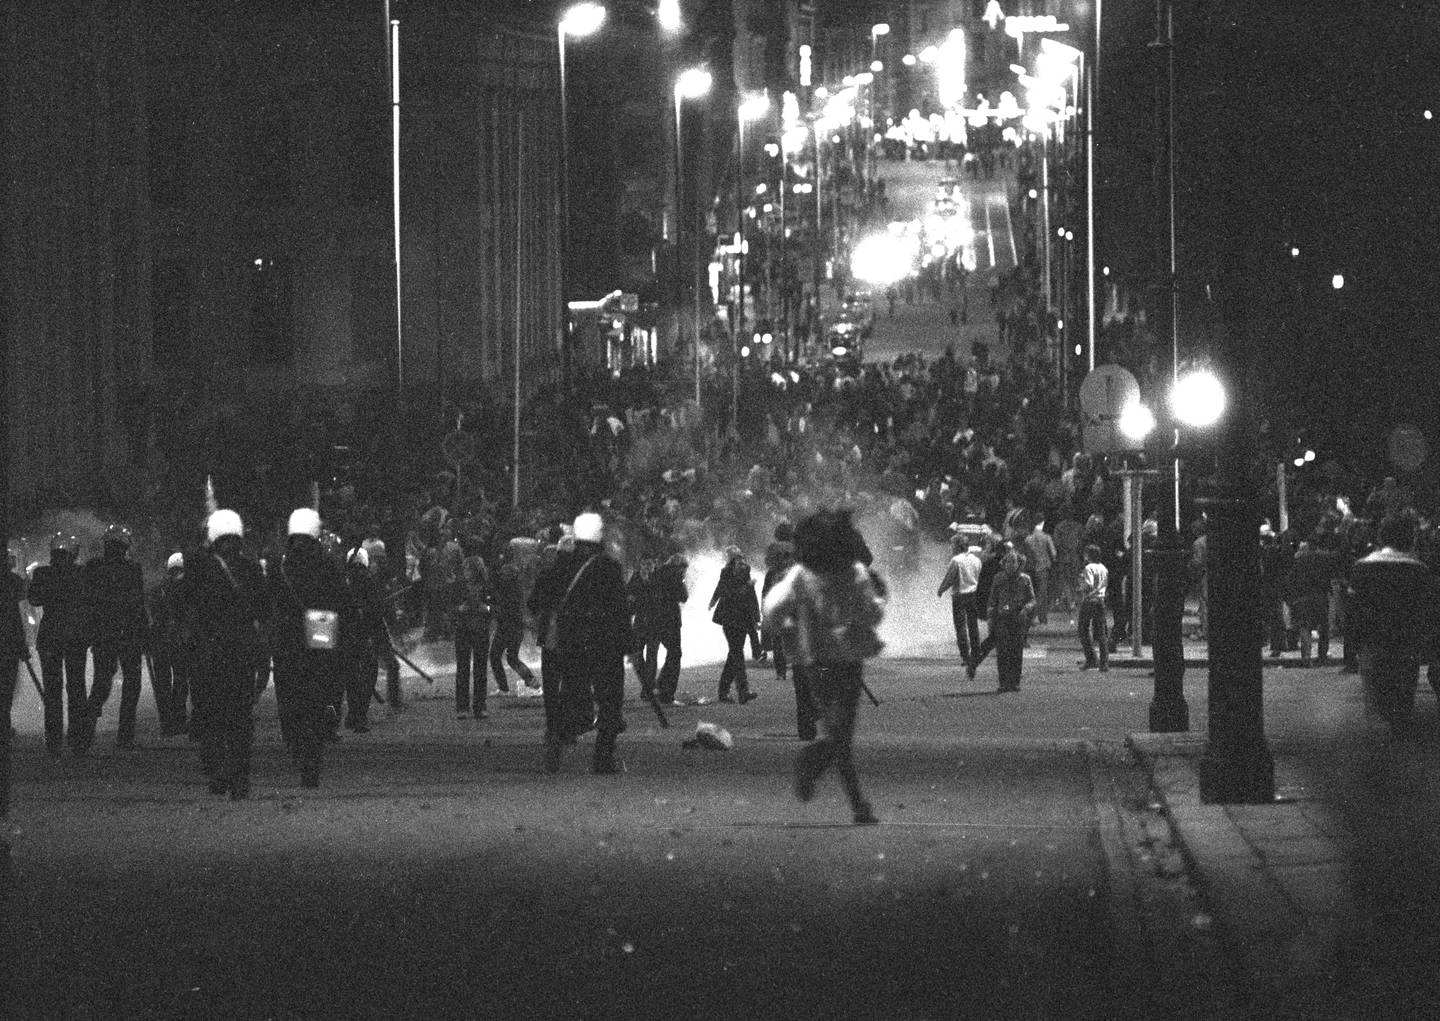 Politiet brukte tåregass under opptøyene i Oslo sentrum natt til 1. mai, her i 1980.